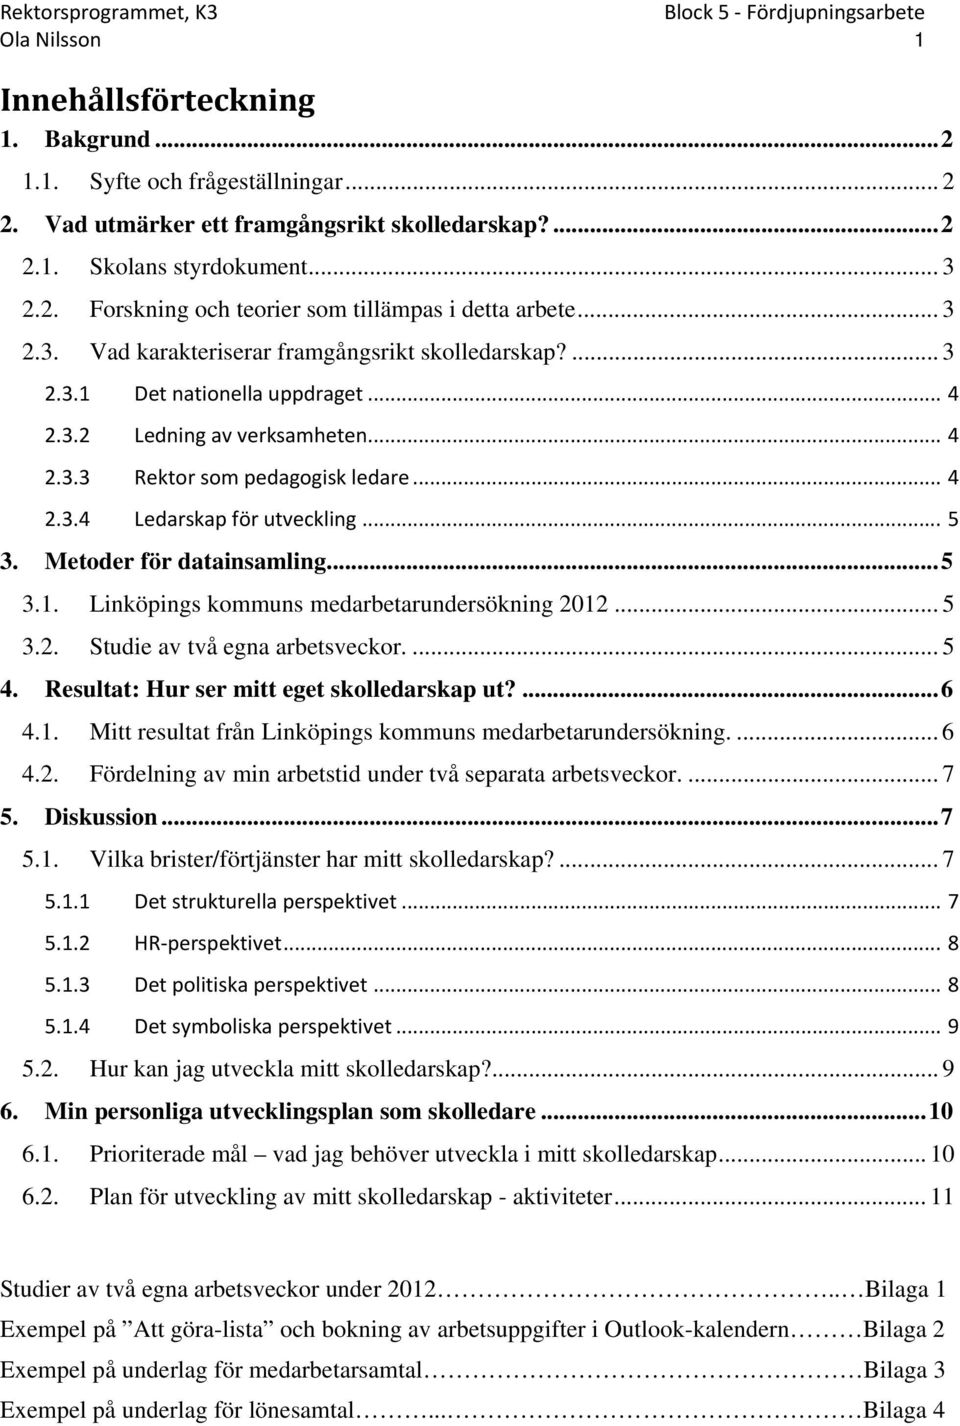 .. 5 3. Metoder för datainsamling... 5 3.1. Linköpings kommuns medarbetarundersökning 2012... 5 3.2. Studie av två egna arbetsveckor.... 5 4. Resultat: Hur ser mitt eget skolledarskap ut?... 6 4.1. Mitt resultat från Linköpings kommuns medarbetarundersökning.